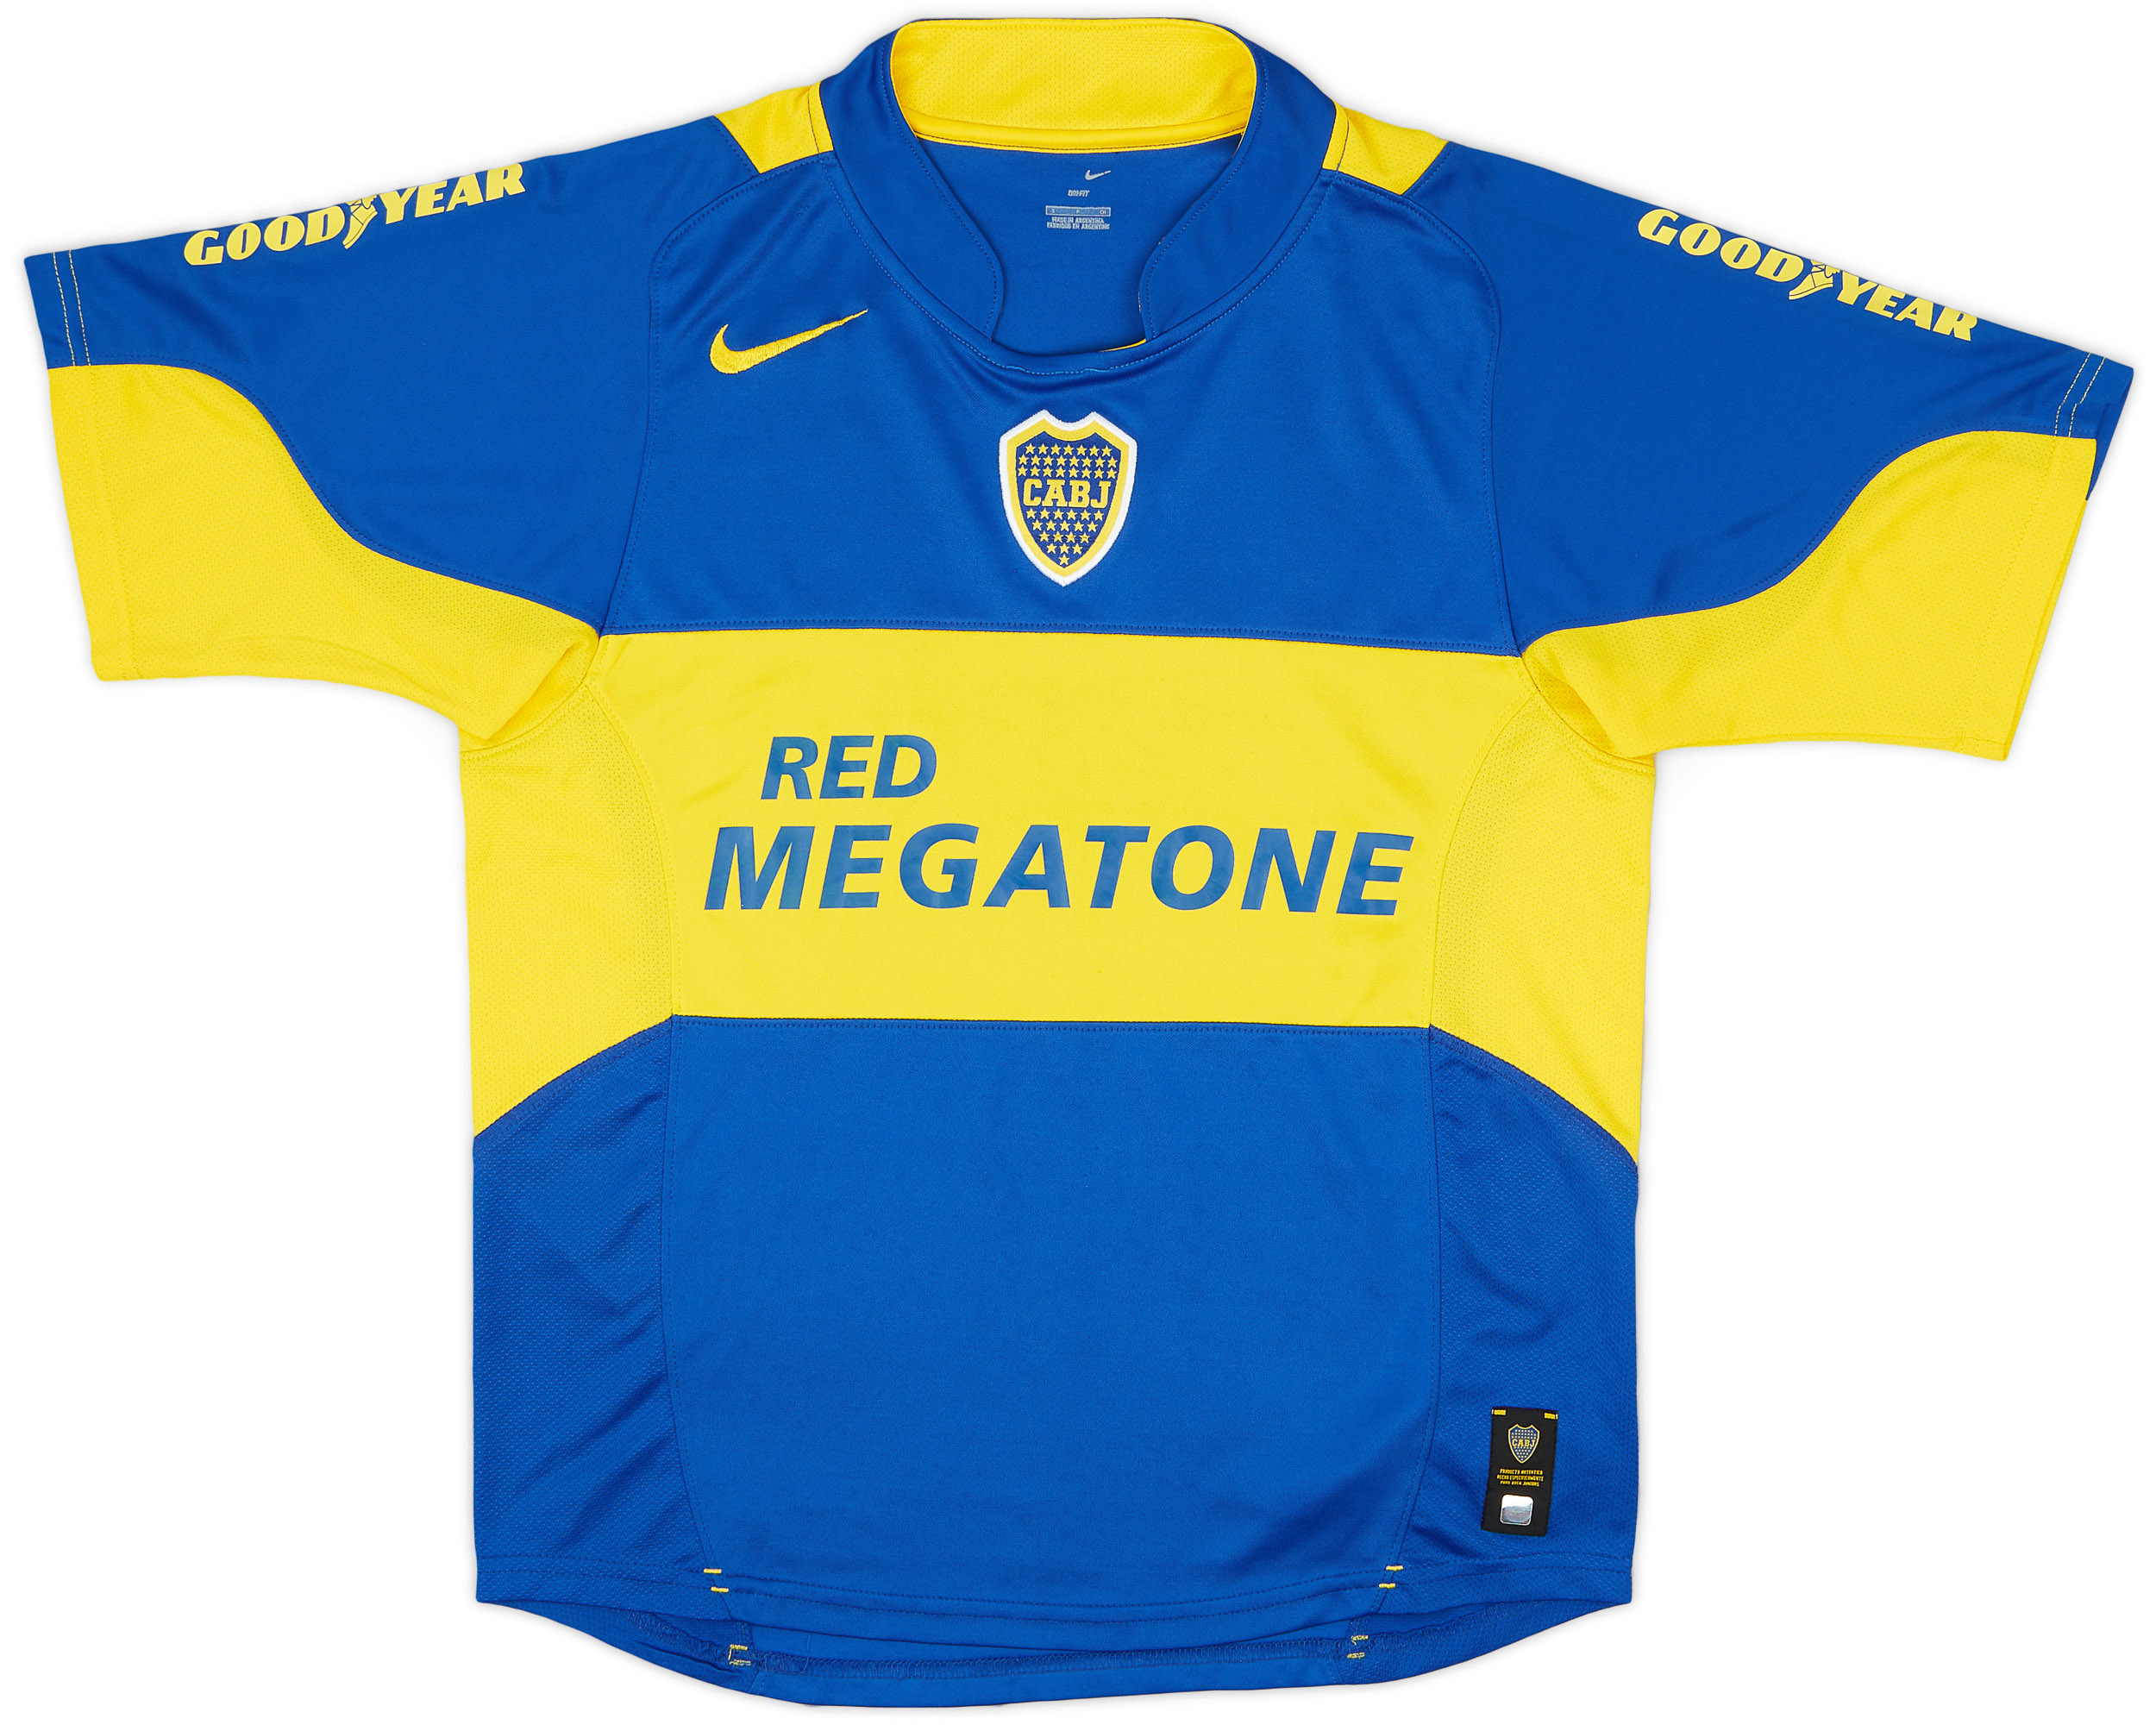 2005 Boca Juniors Home Shirt - 9/10 - ()